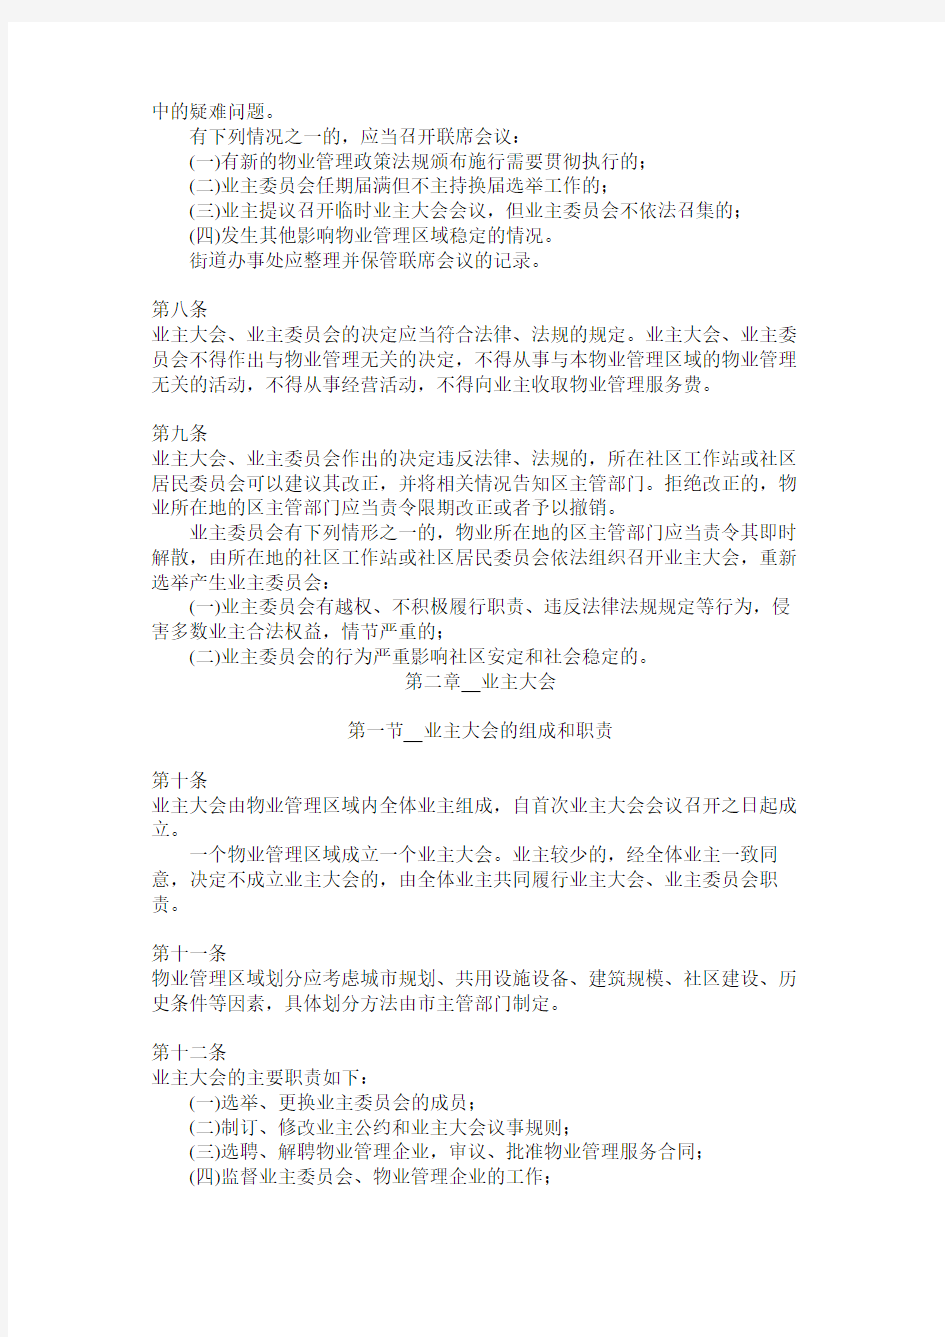 深圳市业主大会和业主委员会指导规则